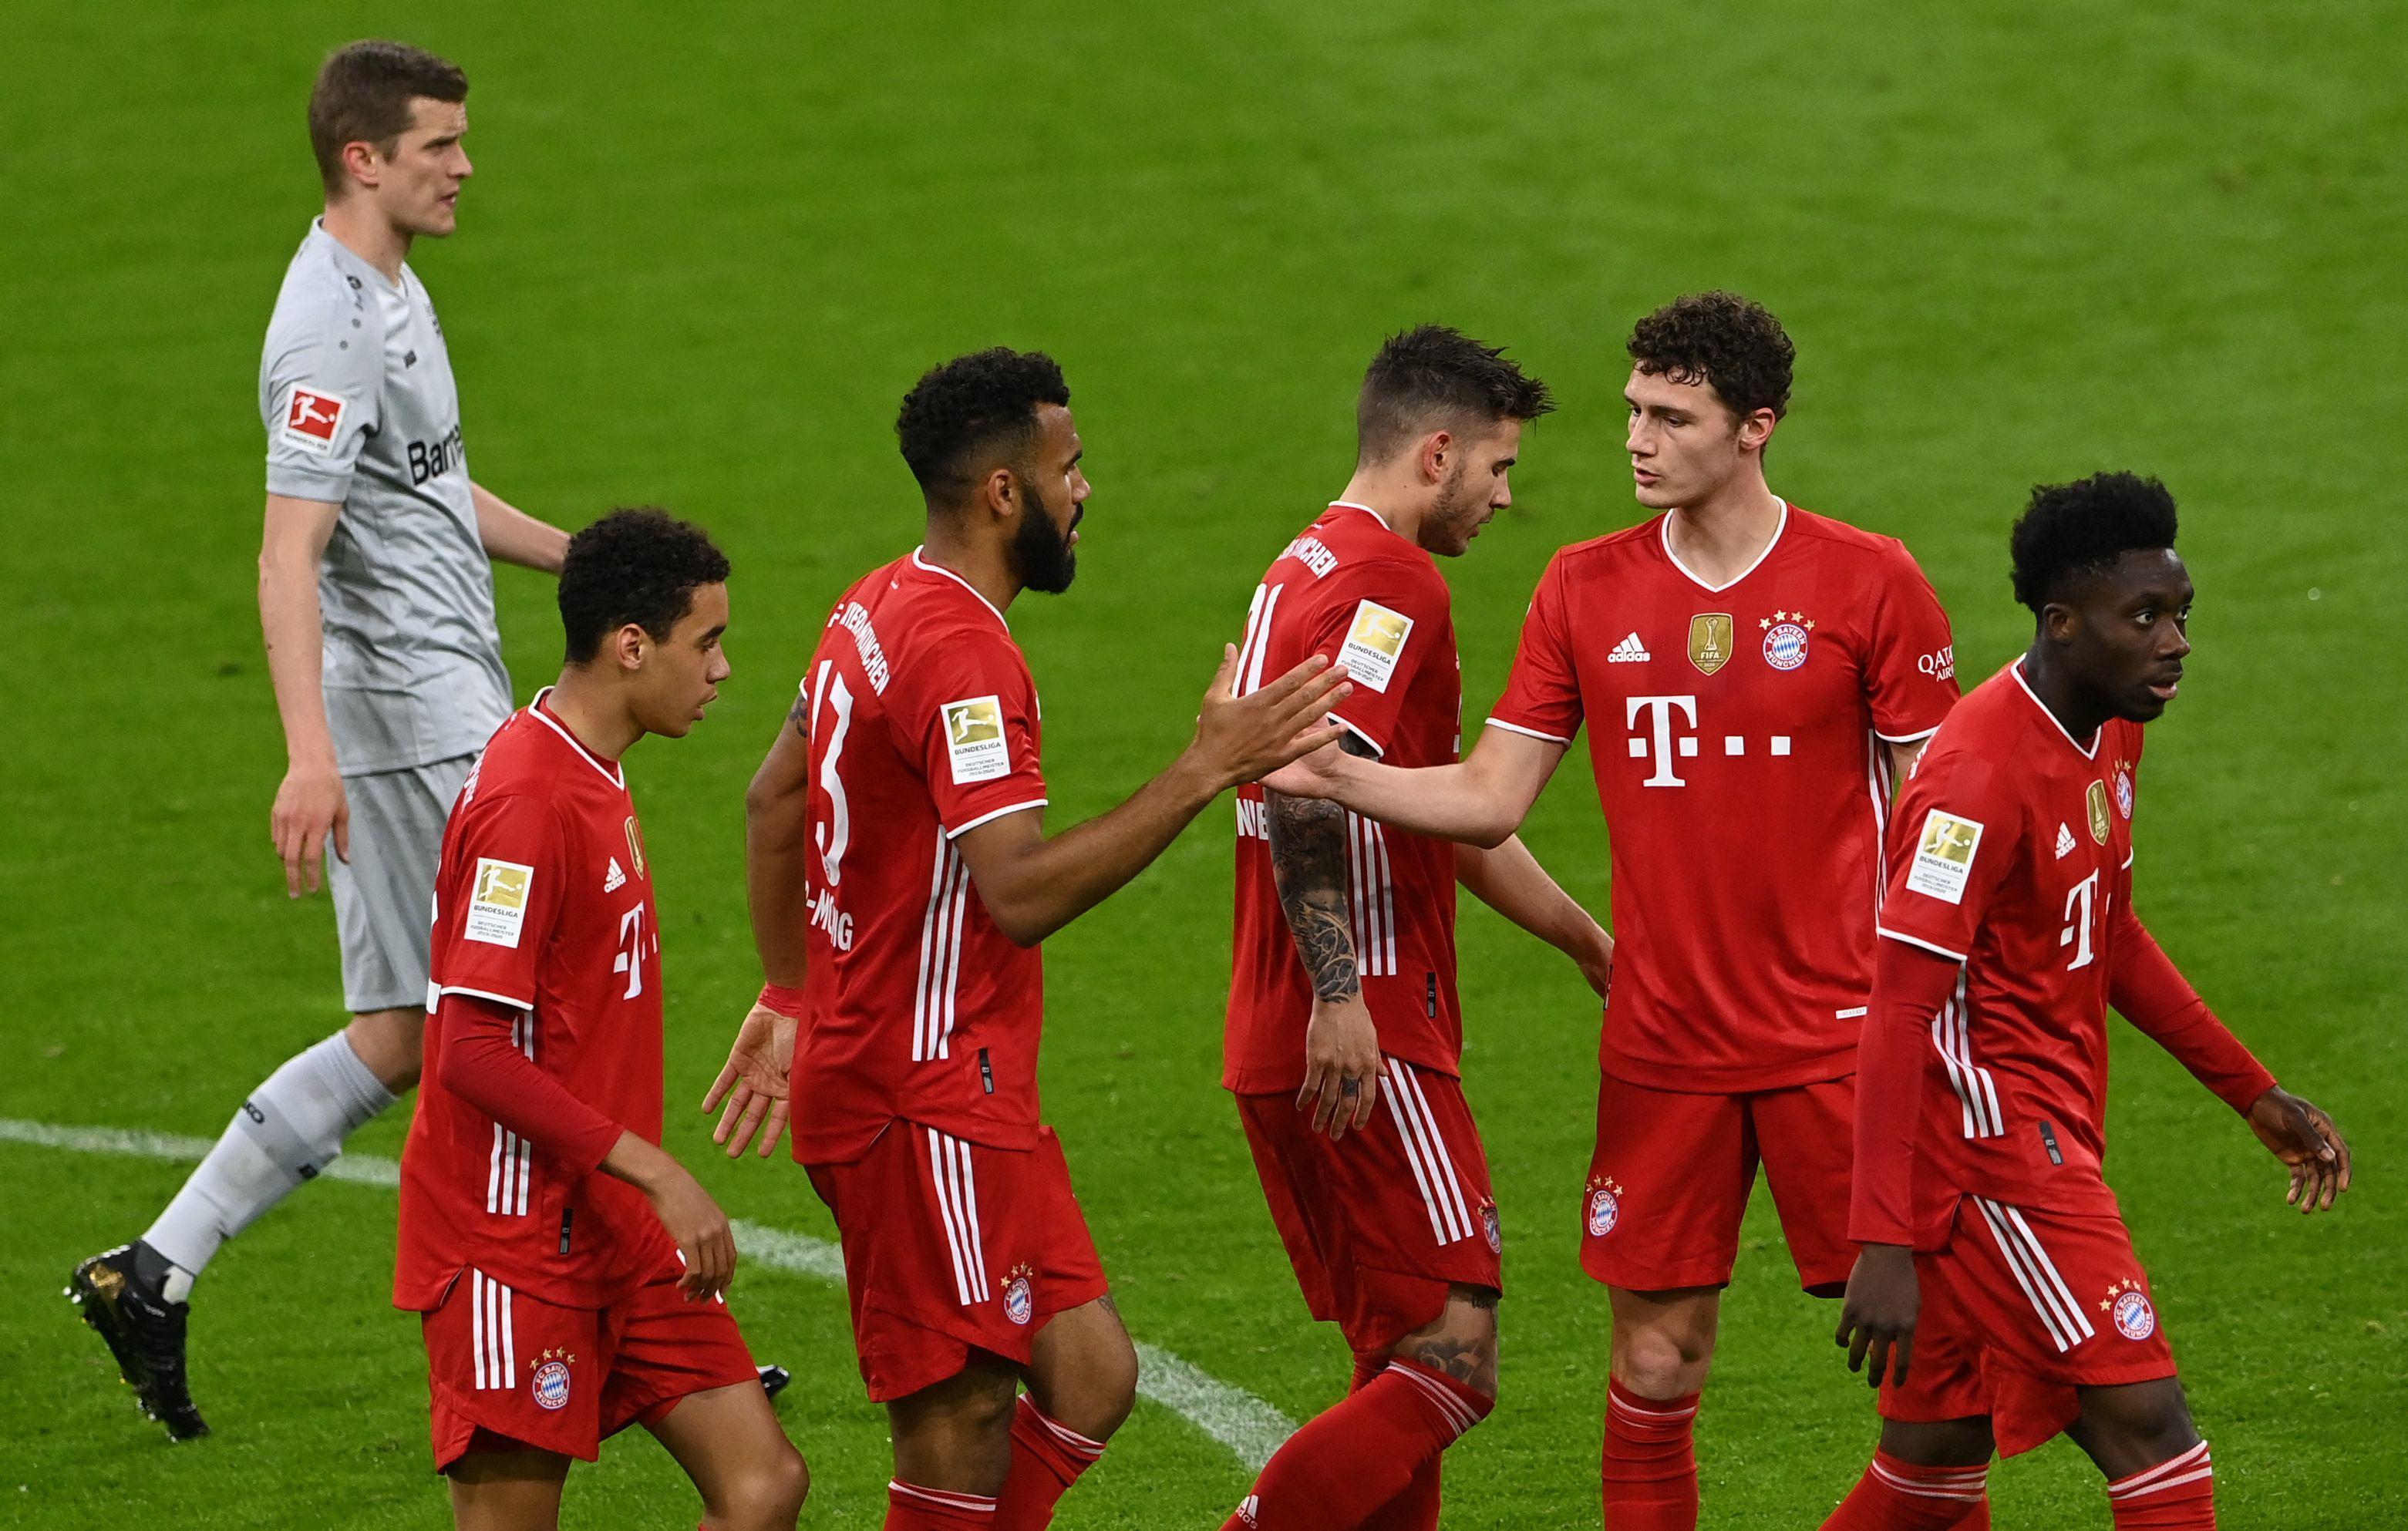 (ÖZET) Bayern Münih-Bayer Leverkusen maç sonucu: 2-0